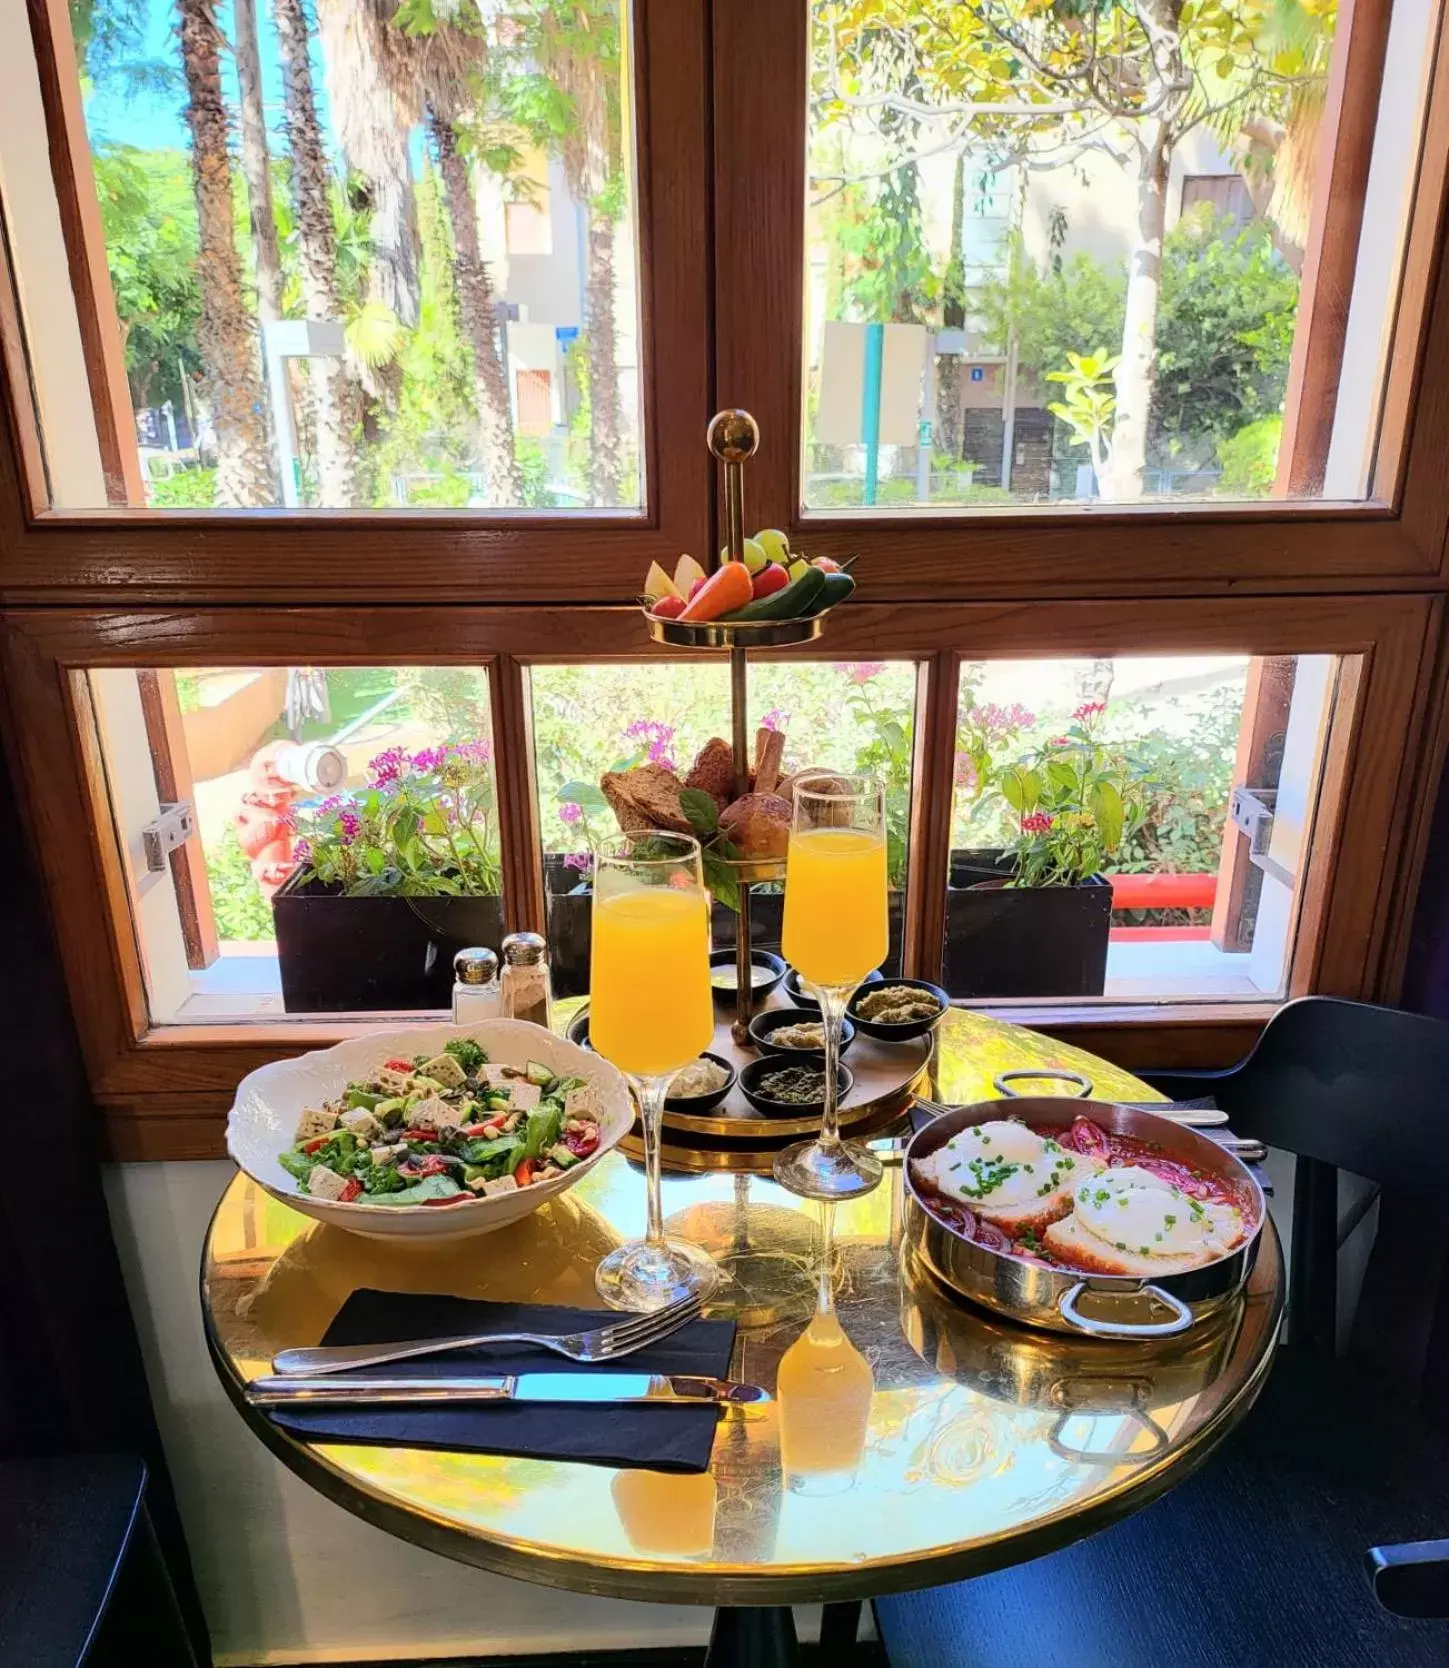 Breakfast in The Rothschild Hotel - Tel Aviv's Finest